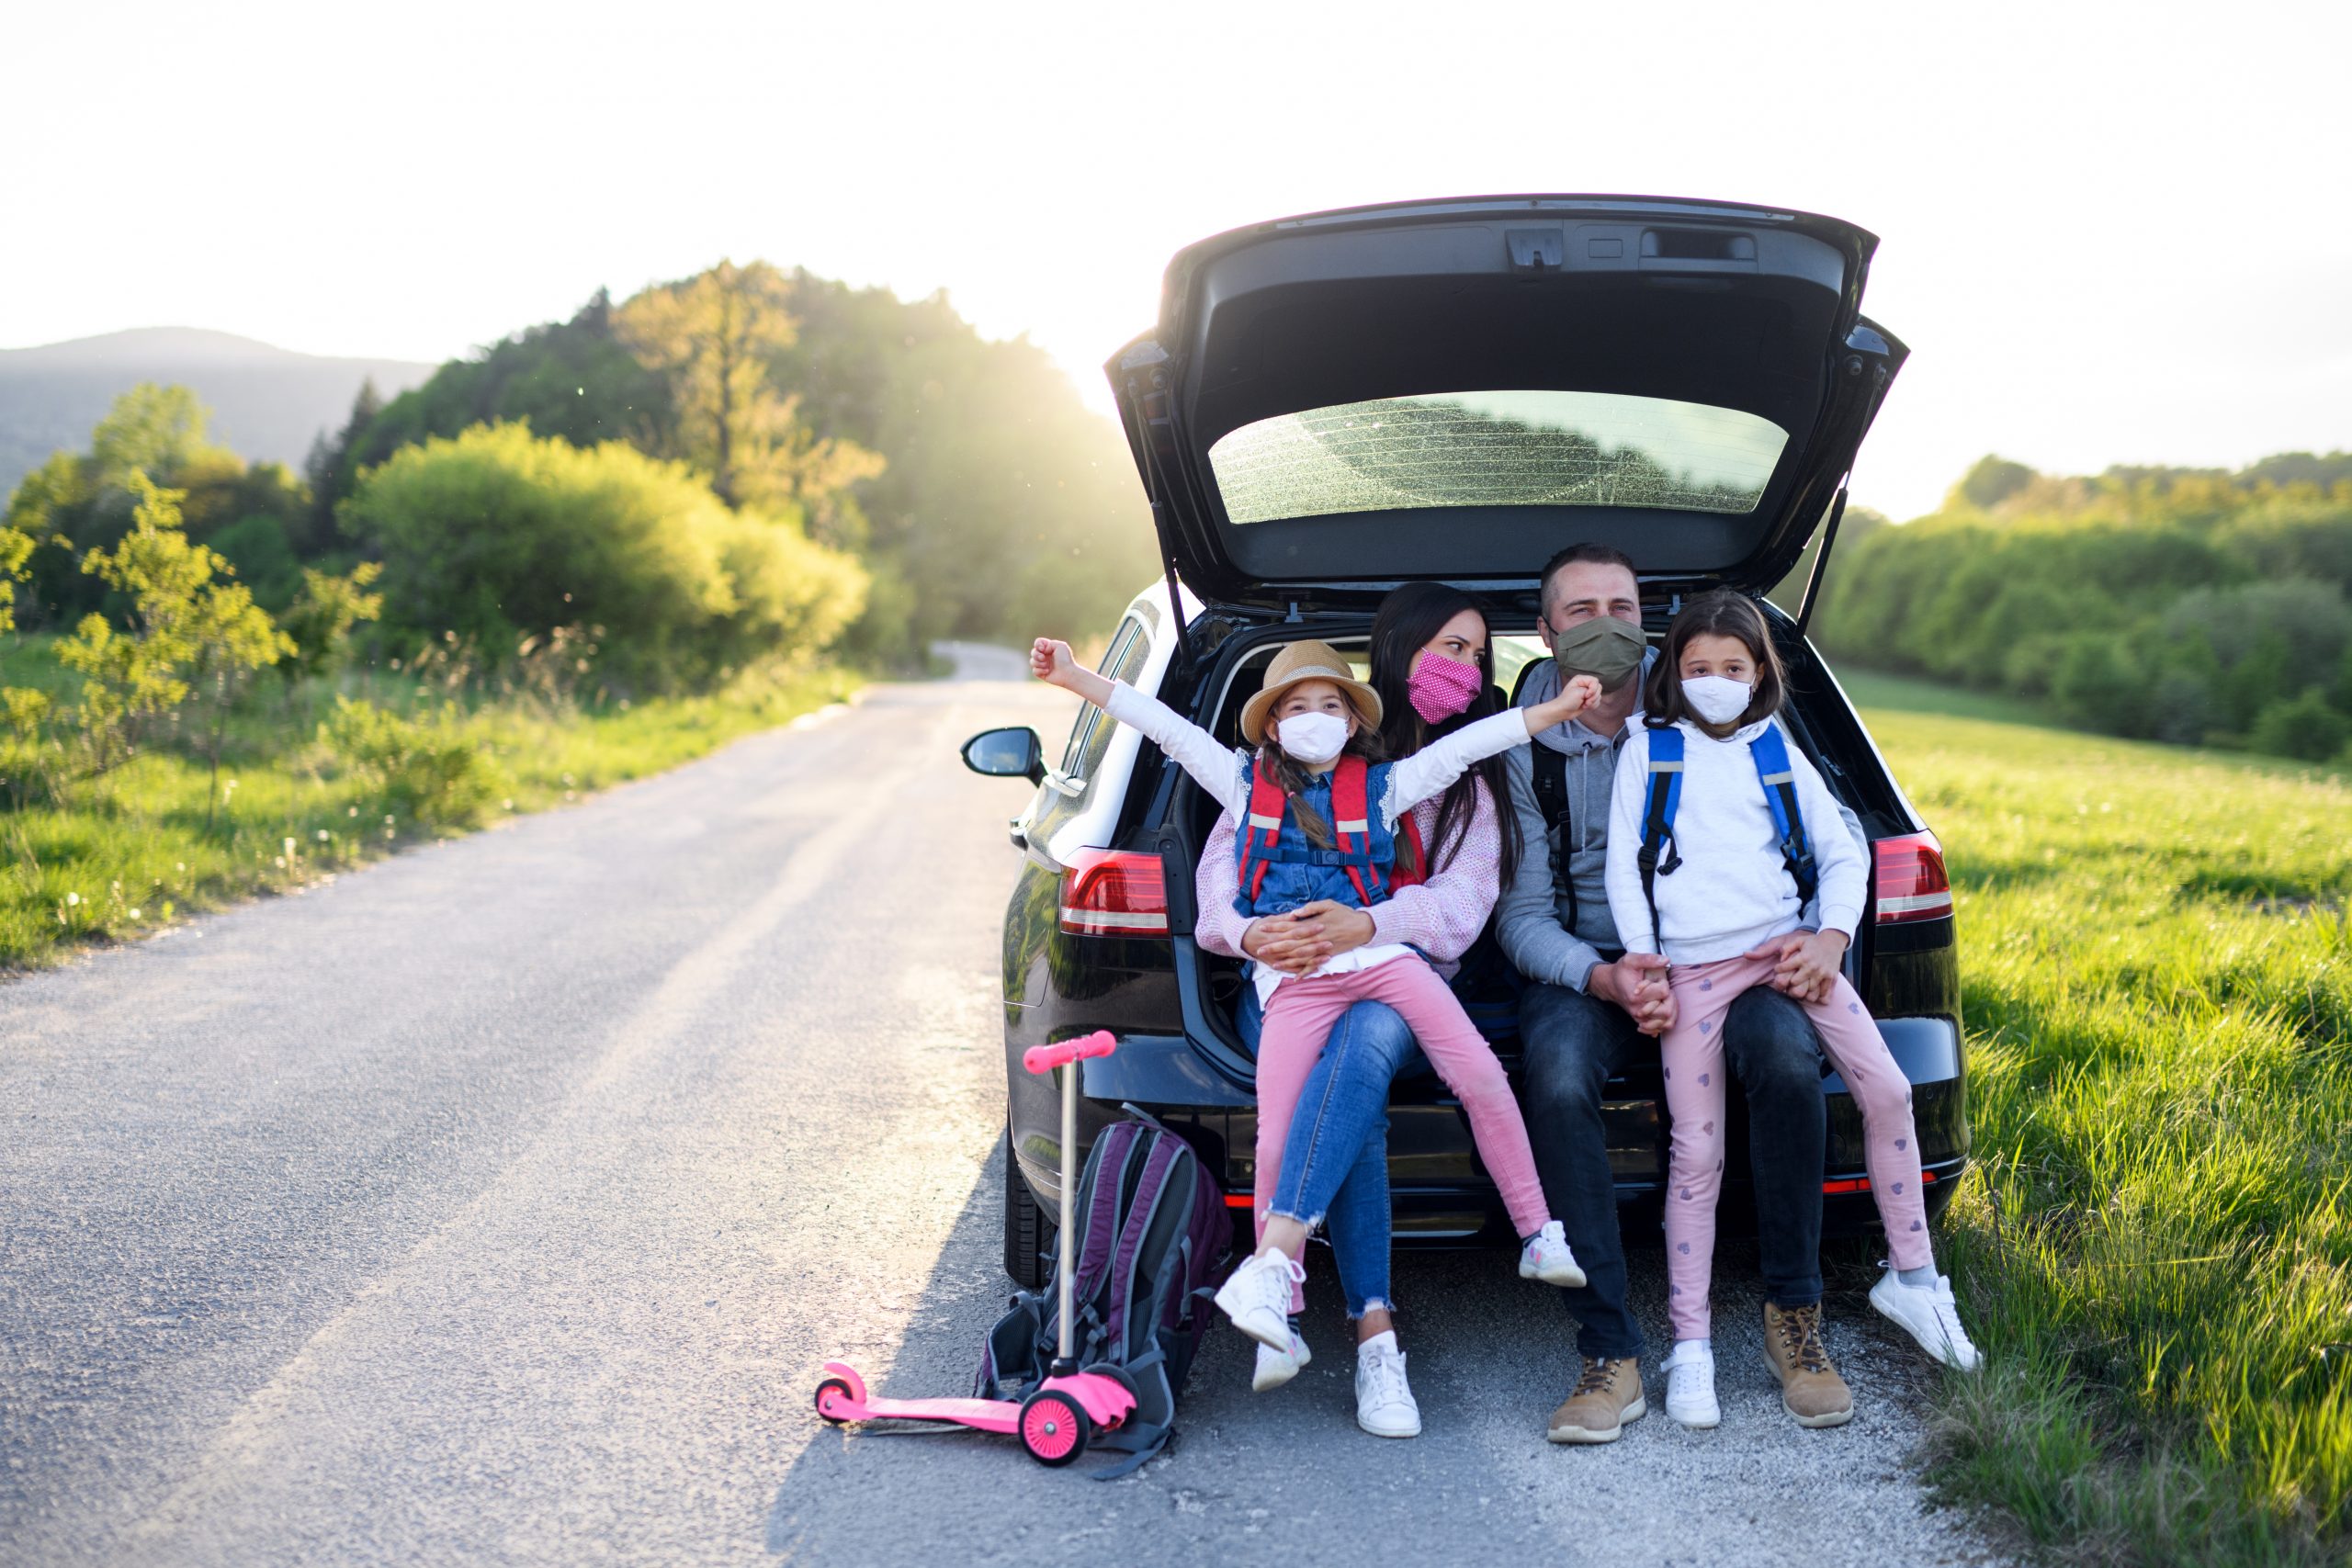 Развлечения в поездку. Путешествие на автомобиле. Путешествие с семьей. Семья путешествует. Семейная машина для путешествий.